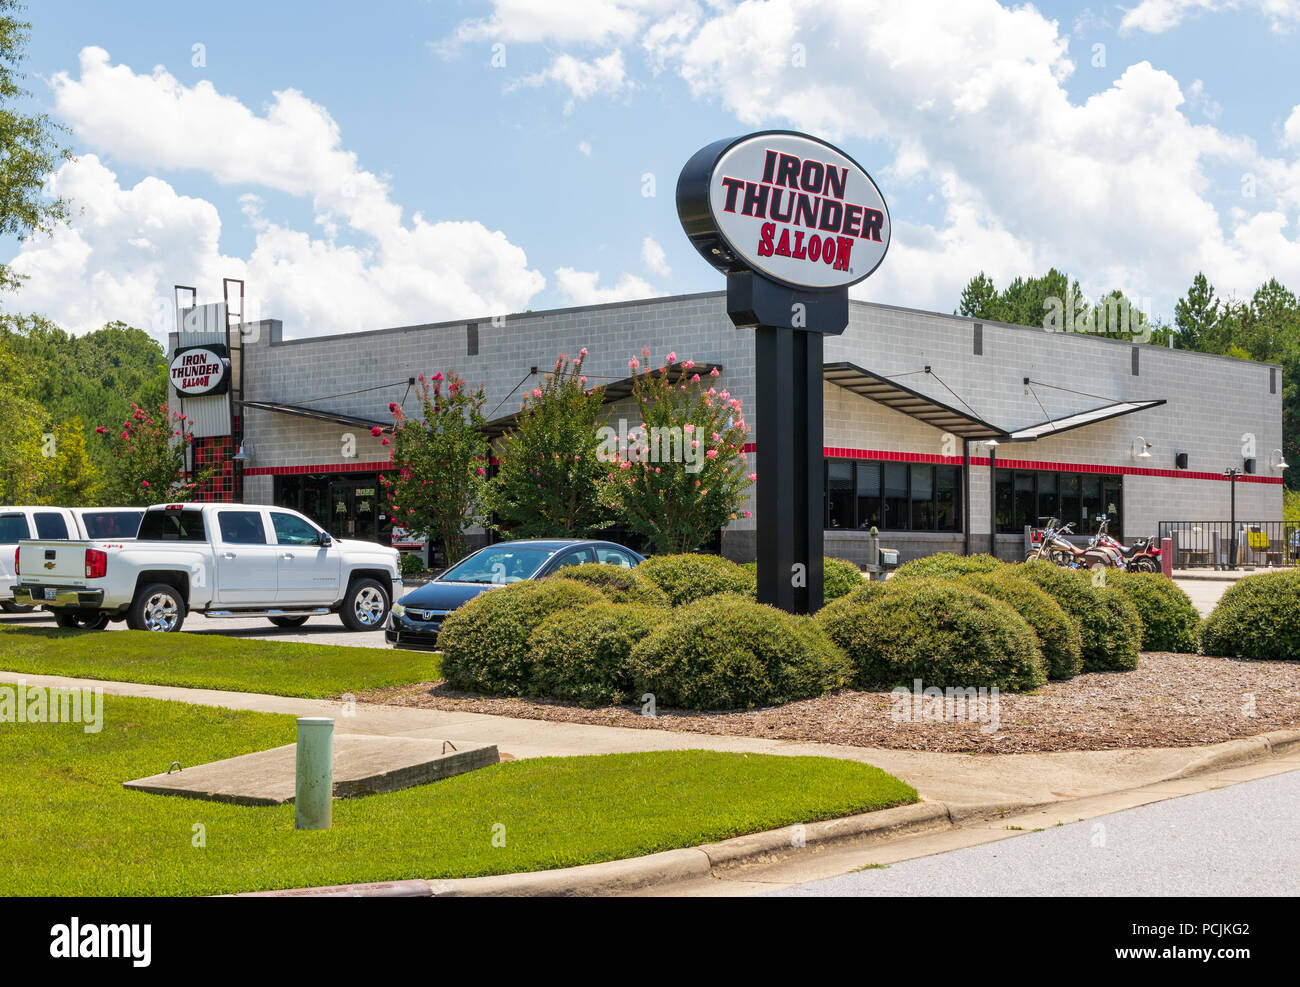 HICKORY, NC, Stati Uniti d'America-26 luglio 18: Questo ferro Thunder Saloon è una delle 4 posizioni nella Carolina del Nord Piemonte. Situato accanto a una Harley Davidson concessionario Foto Stock